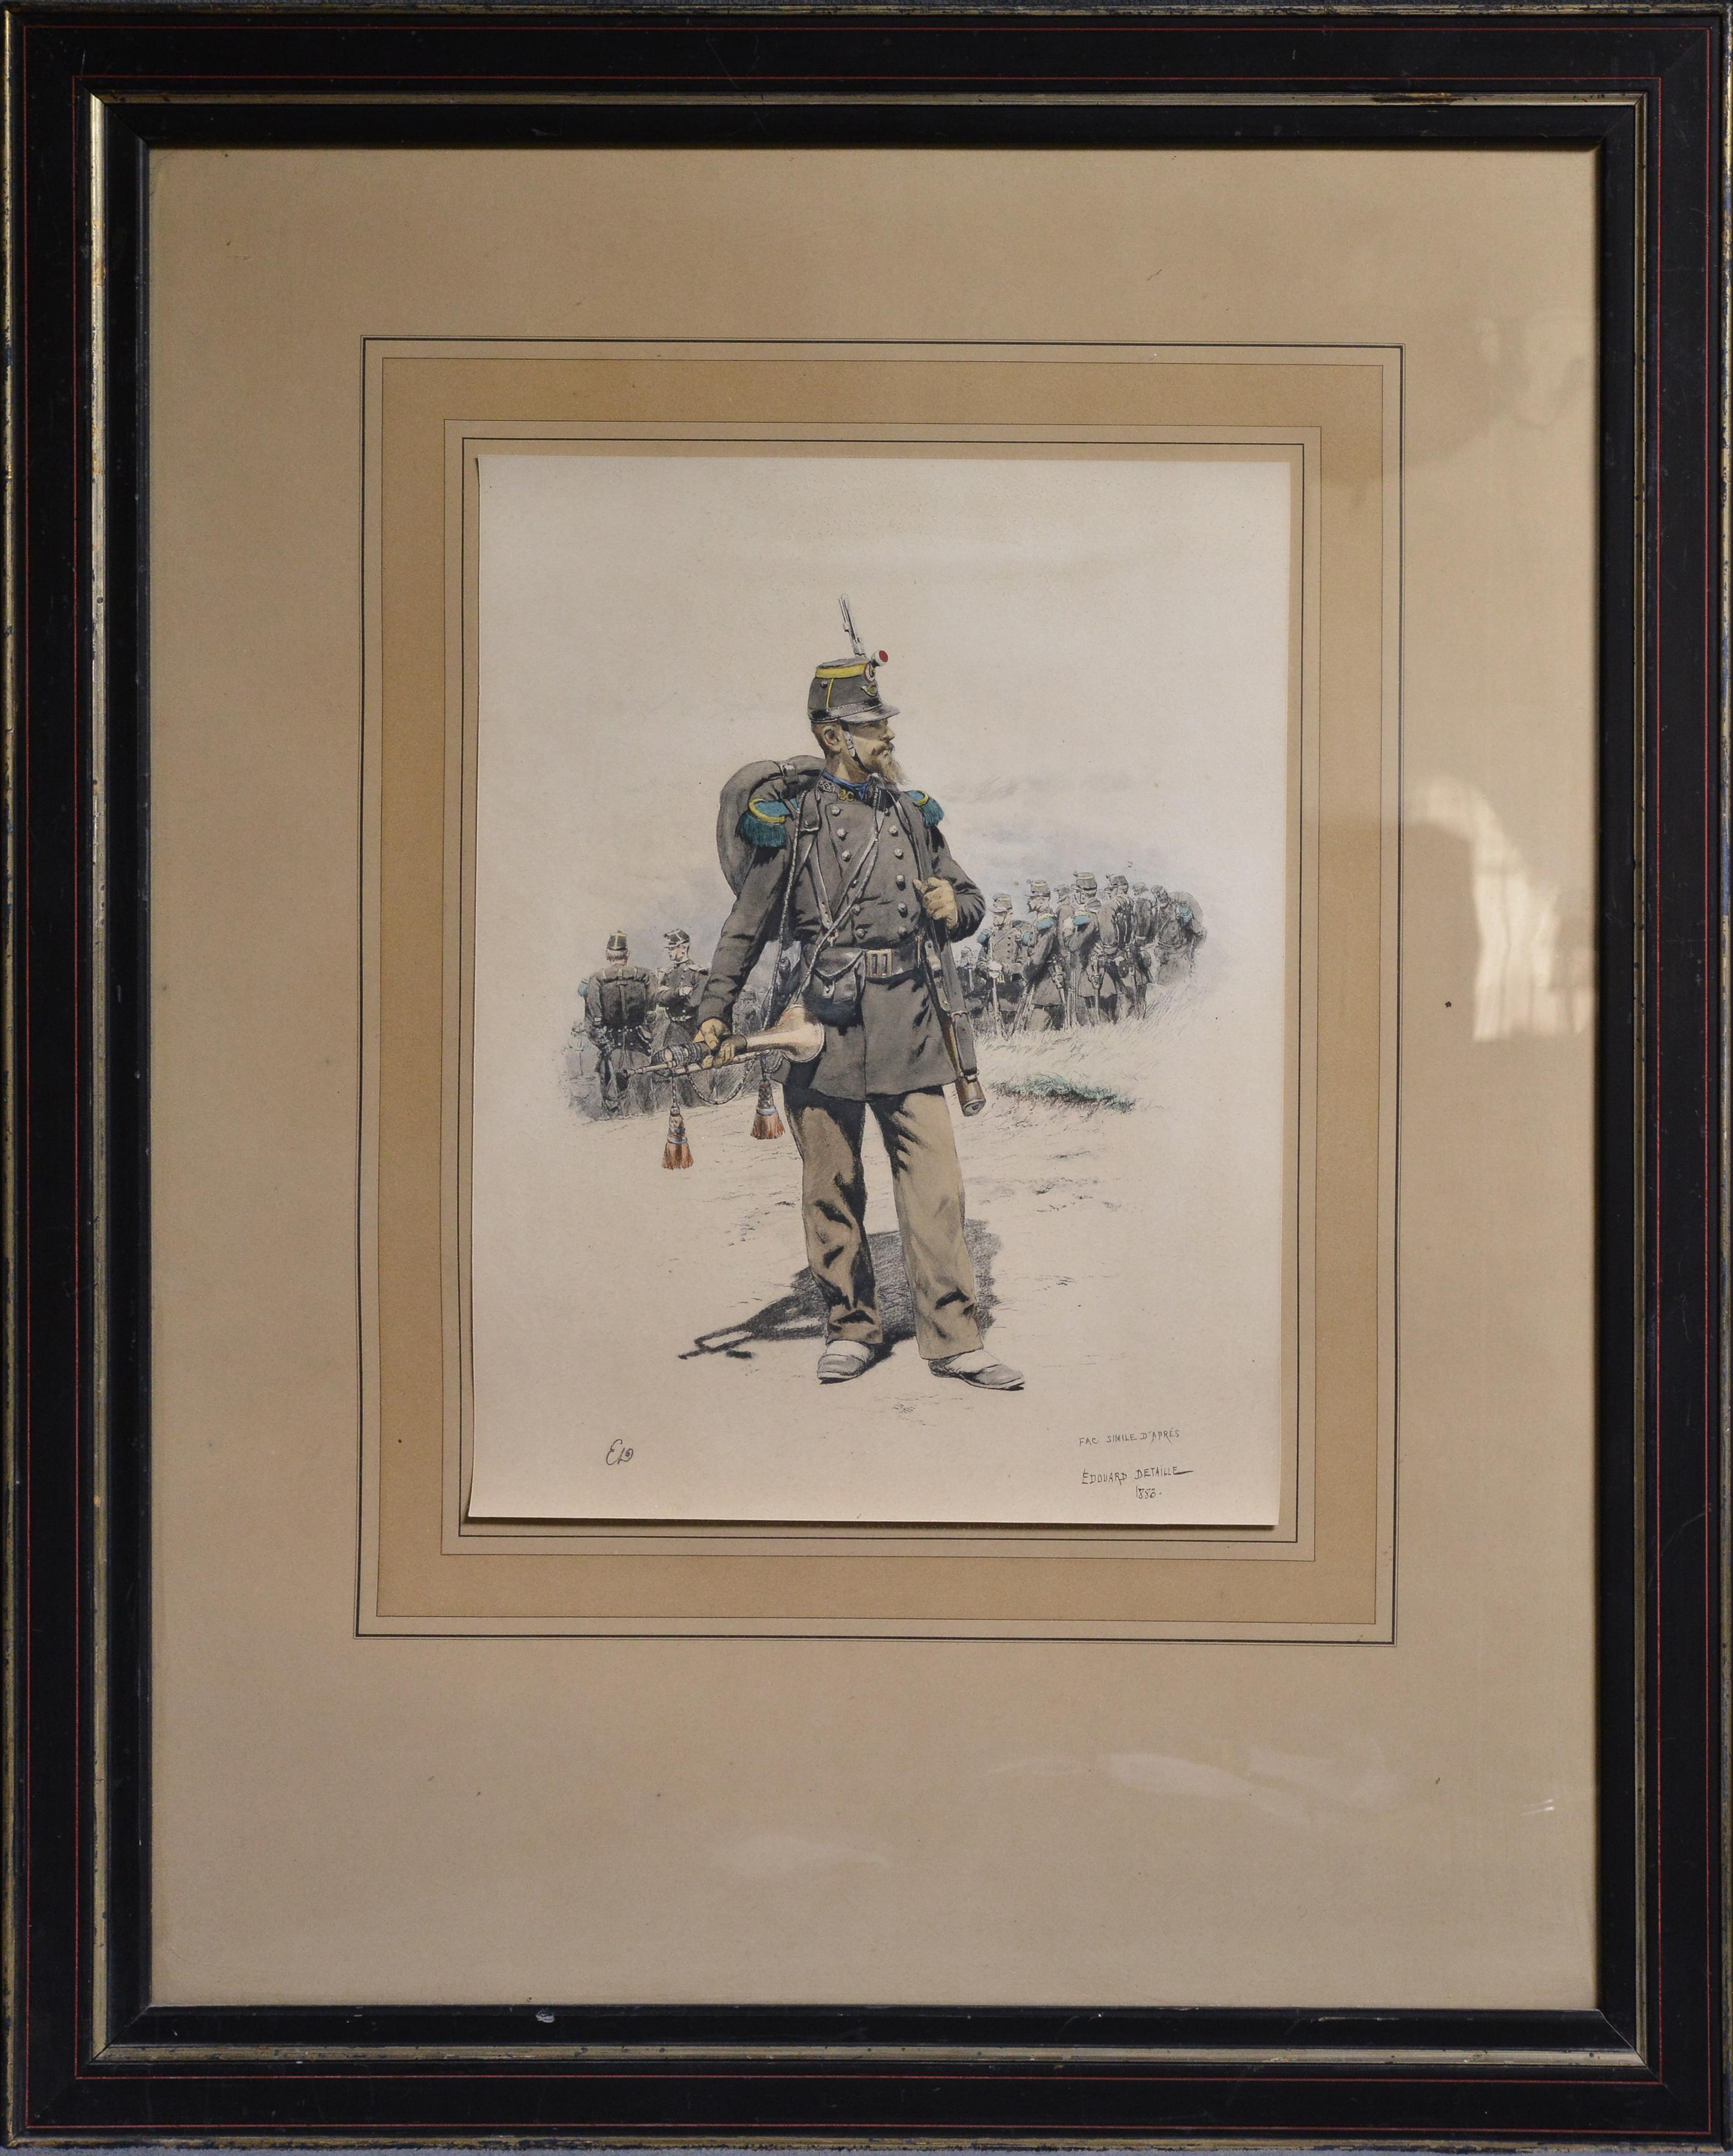 Bugler of Chasseurs Corps par Ed Detaille, lithographie couleur fac-similé du 19e siècle